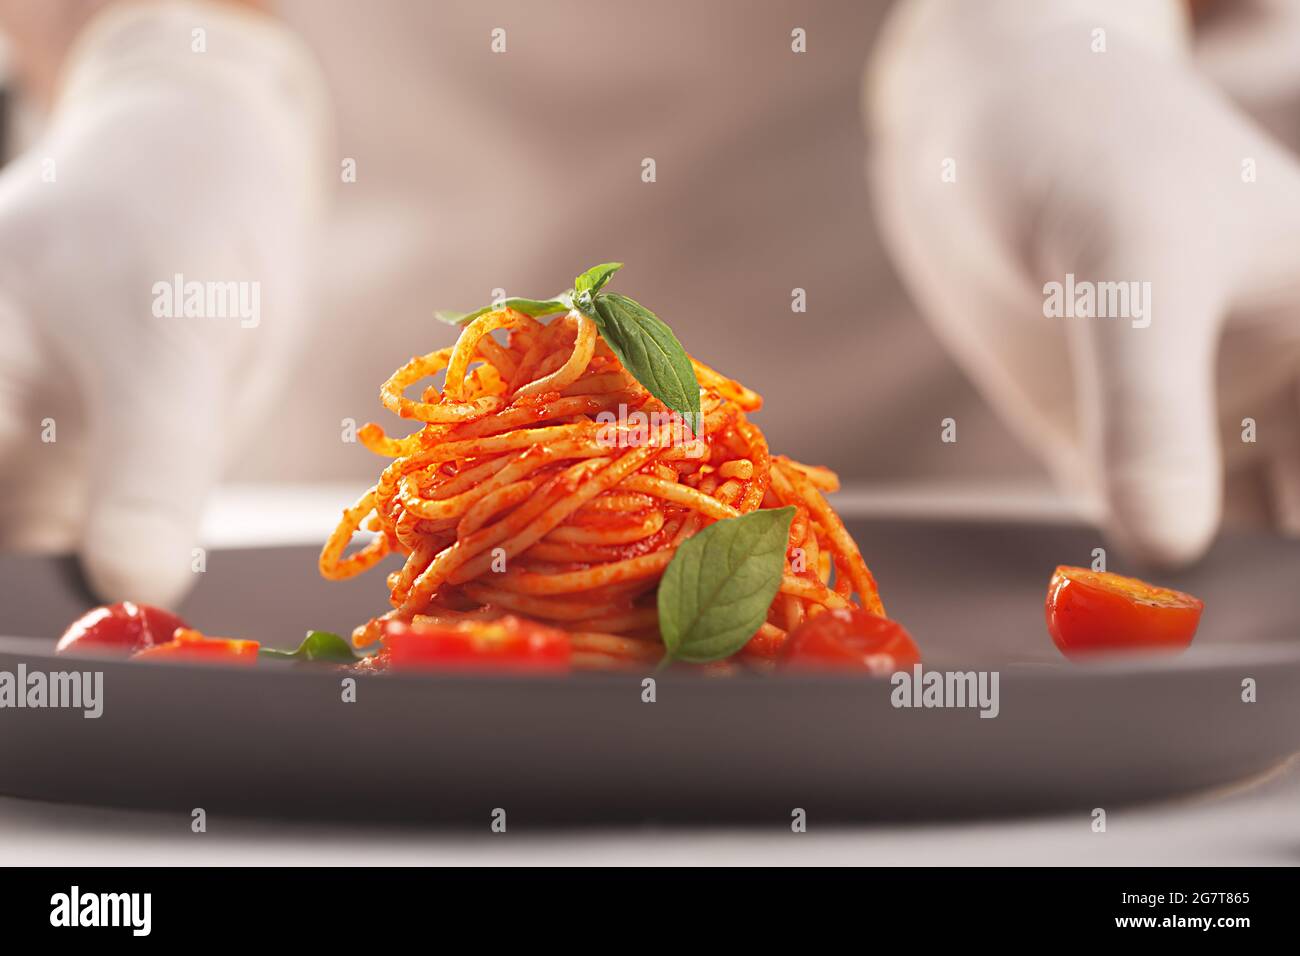 Lo chef tiene un piatto di pasta in salsa di pomodoro nelle mani gugorate. Serve alta cucina, piatti Foto Stock